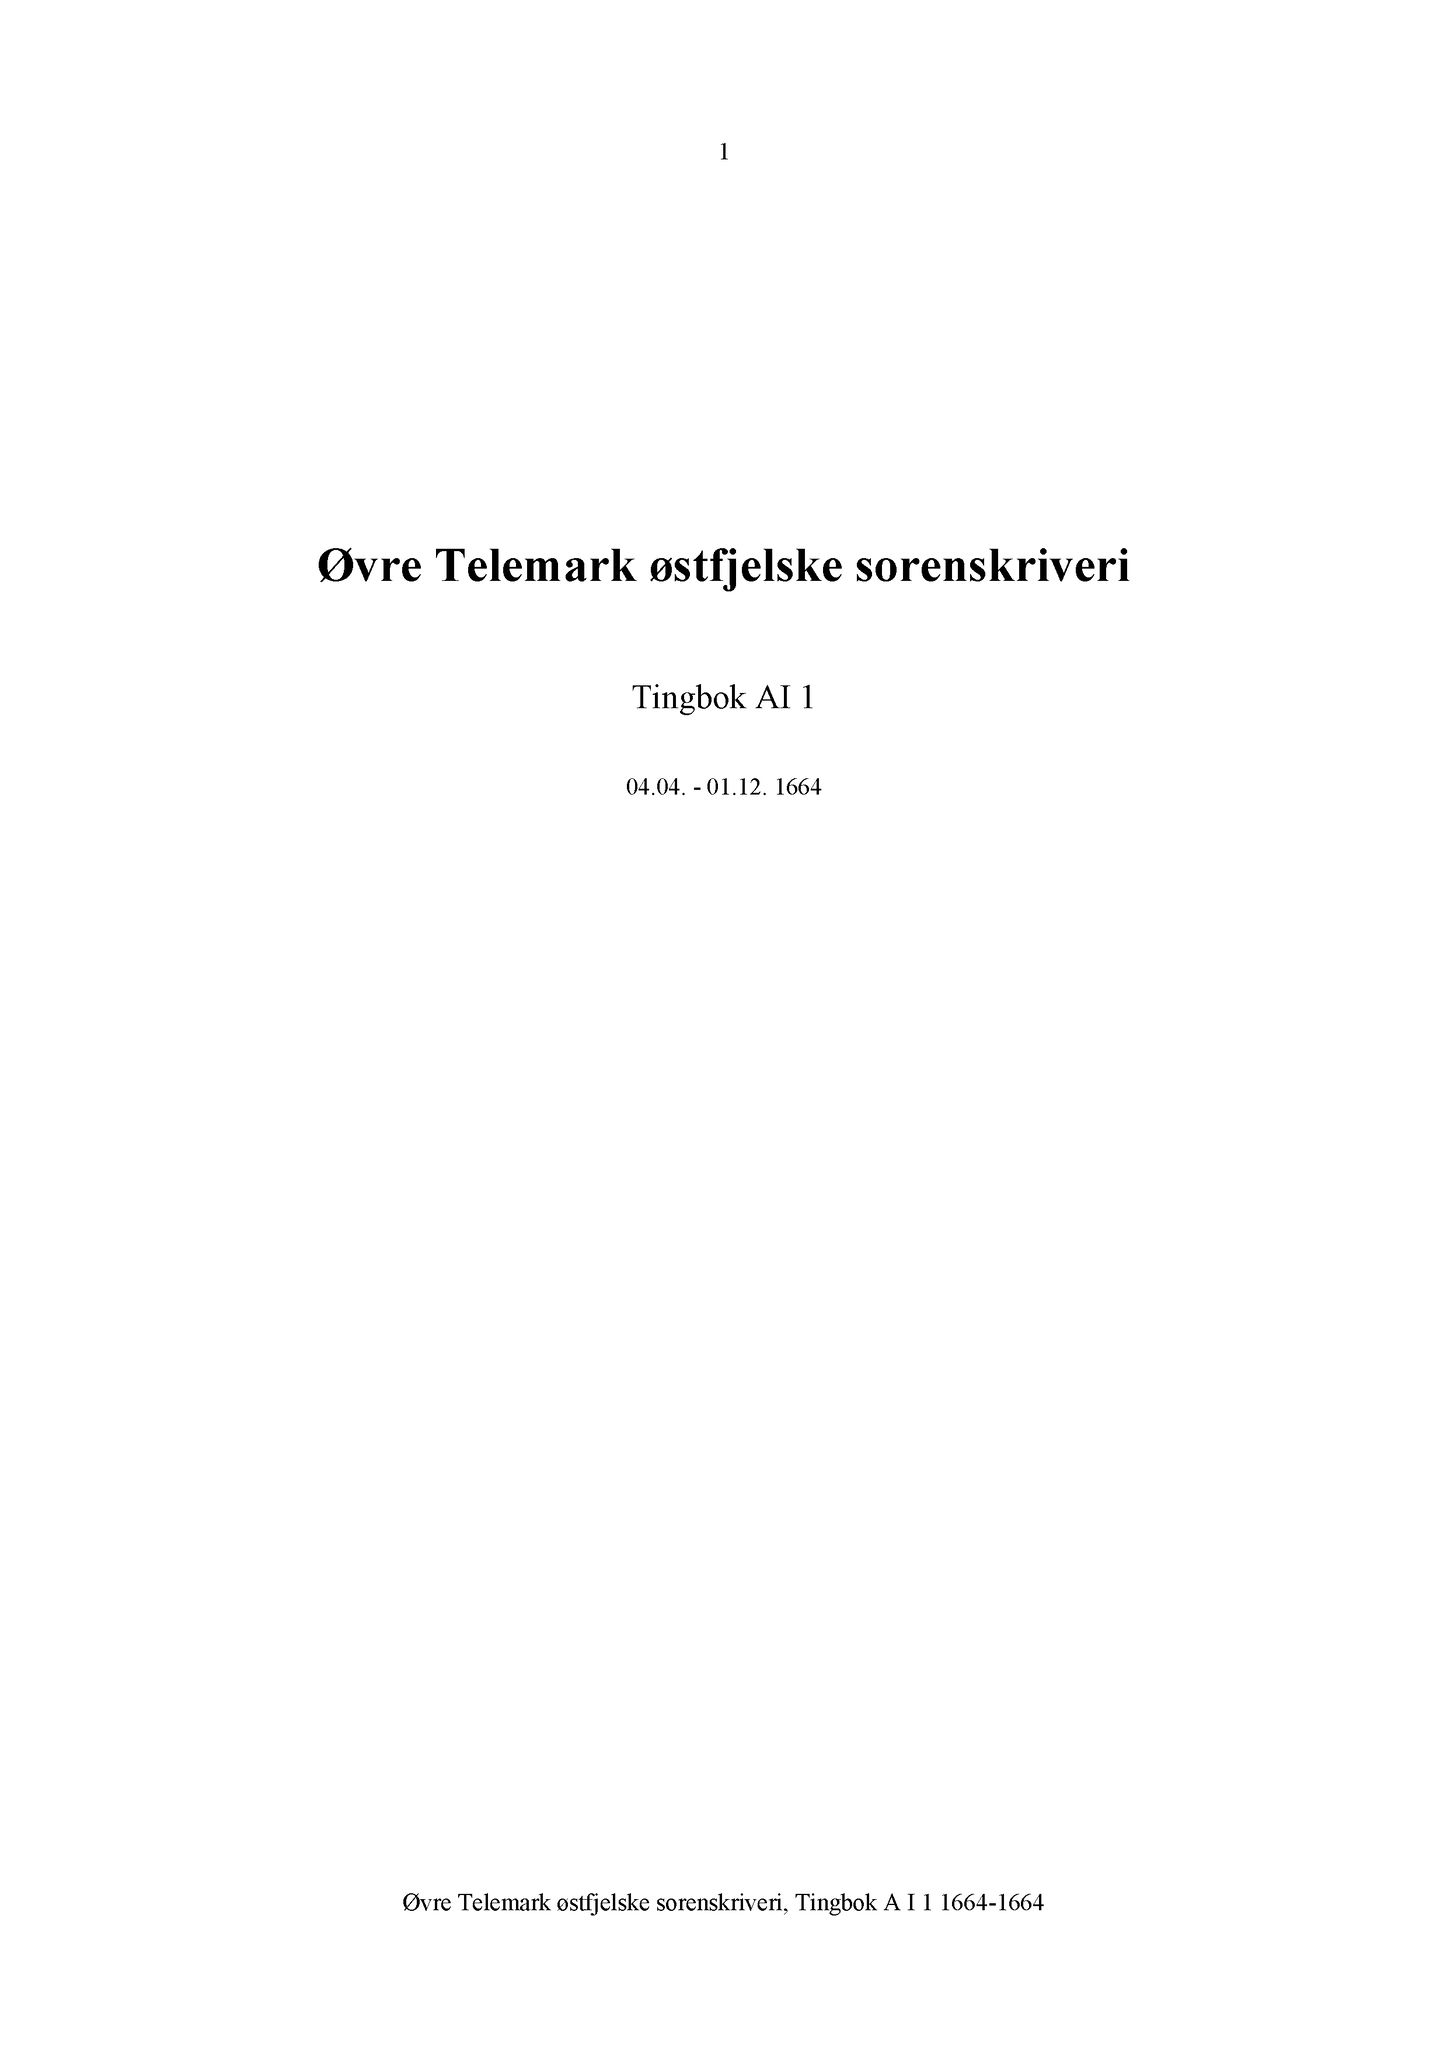 Samling av fulltekstavskrifter, SAB/FULLTEKST/A/08/0001: Øvre Telemark østfjelske sorenskriveri: Tingbok nr. A I 1, 1664